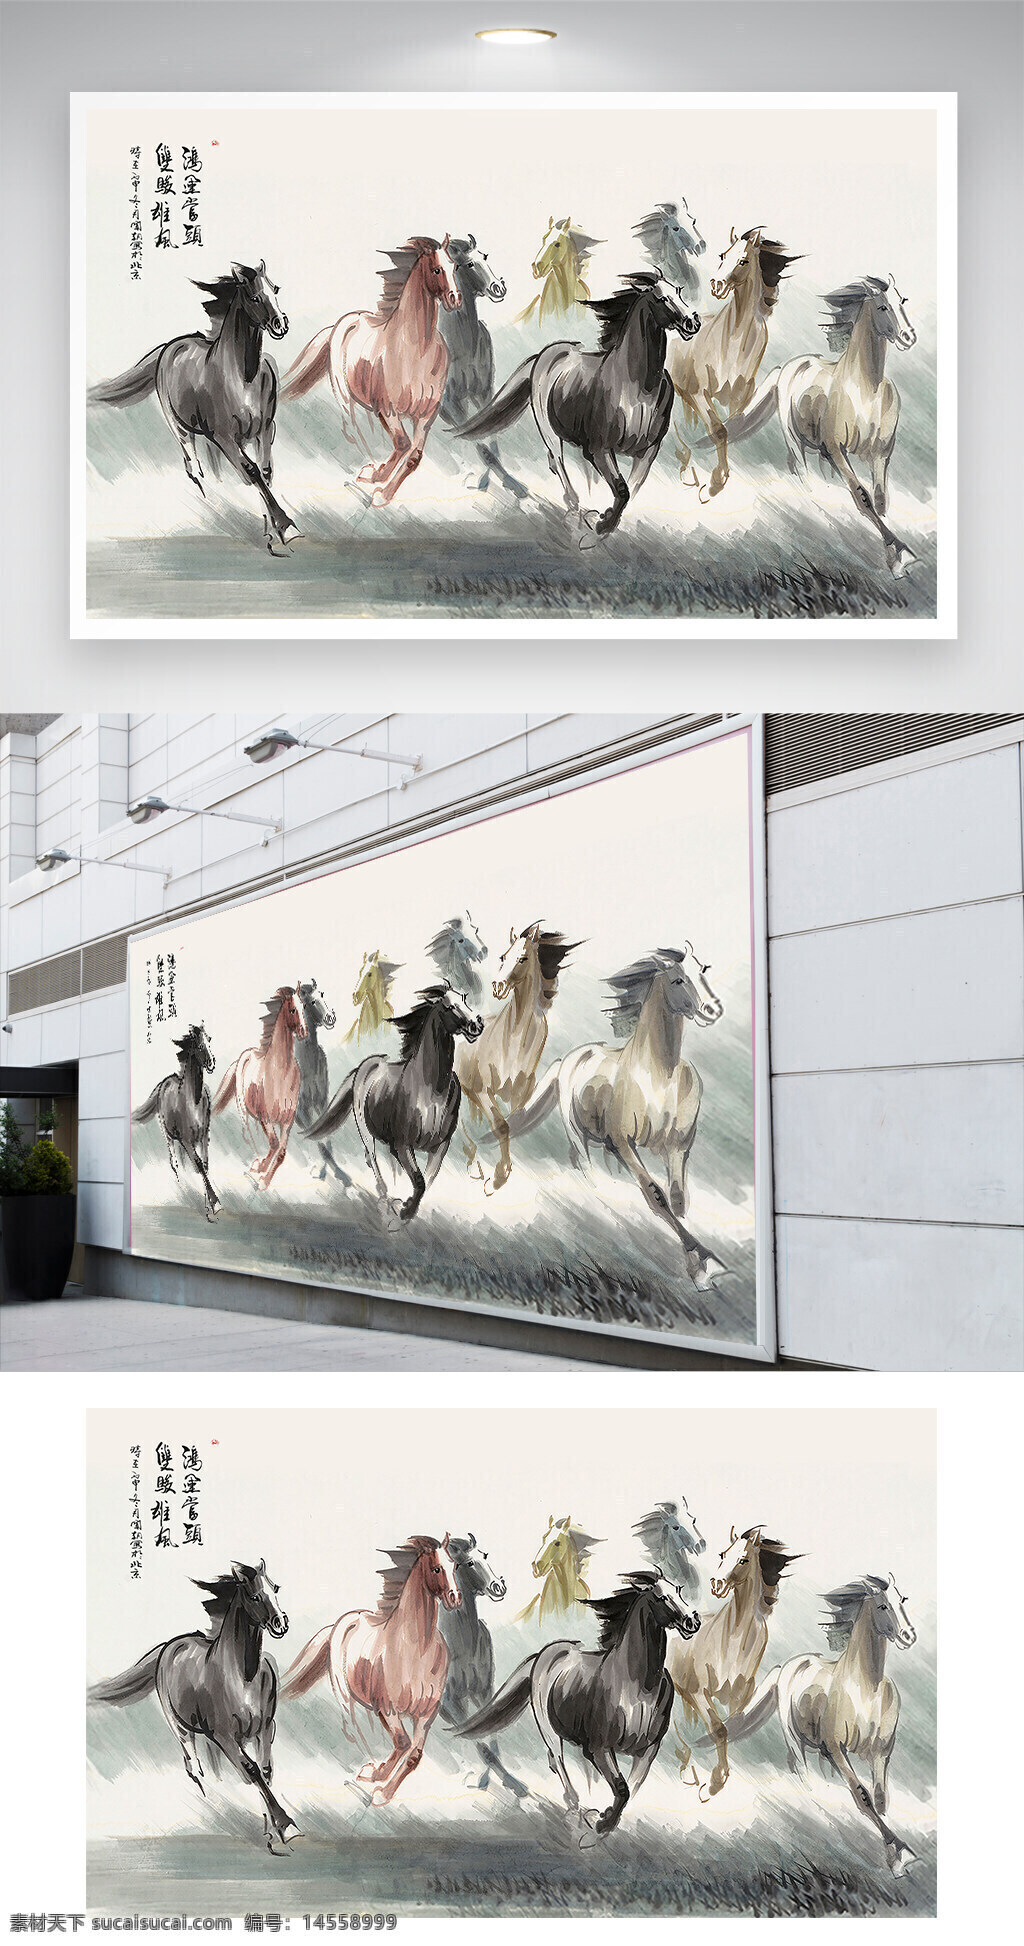 中国风 水墨 工笔 手绘 八骏图 电视 背景墙